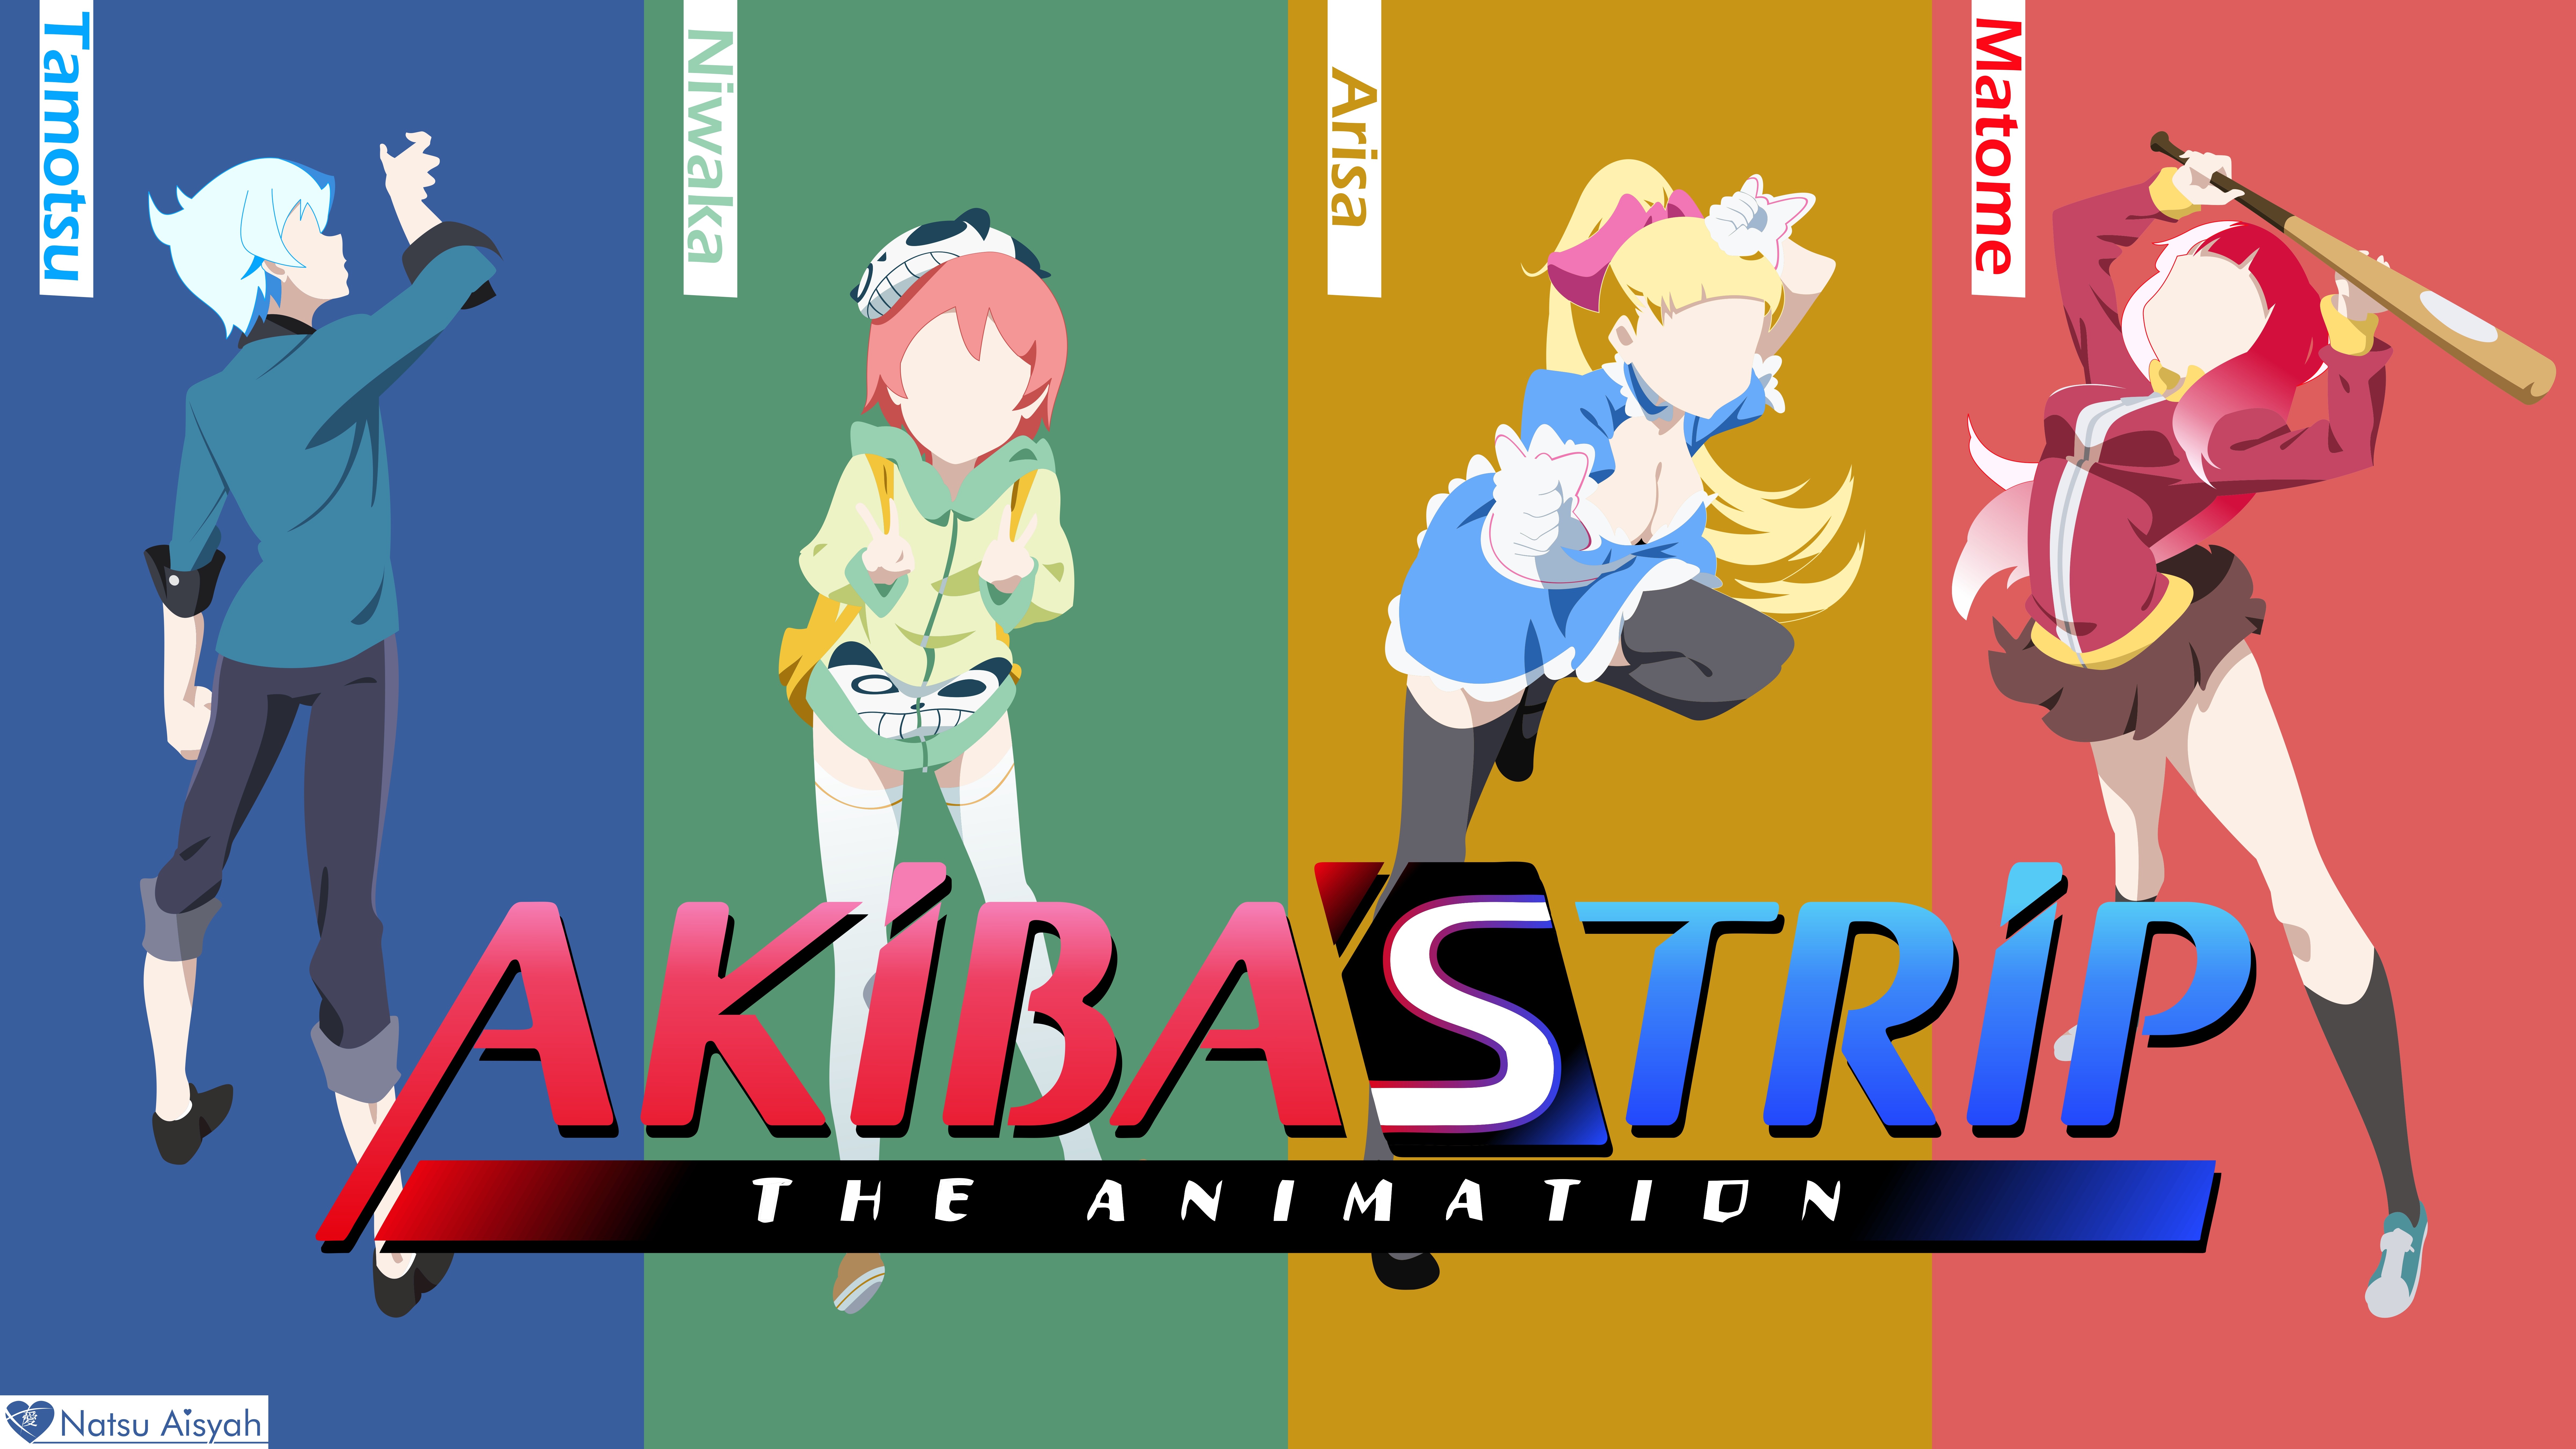 Akibas Trip Manseika Matome Anime Collage Anime Girls 9600x5400